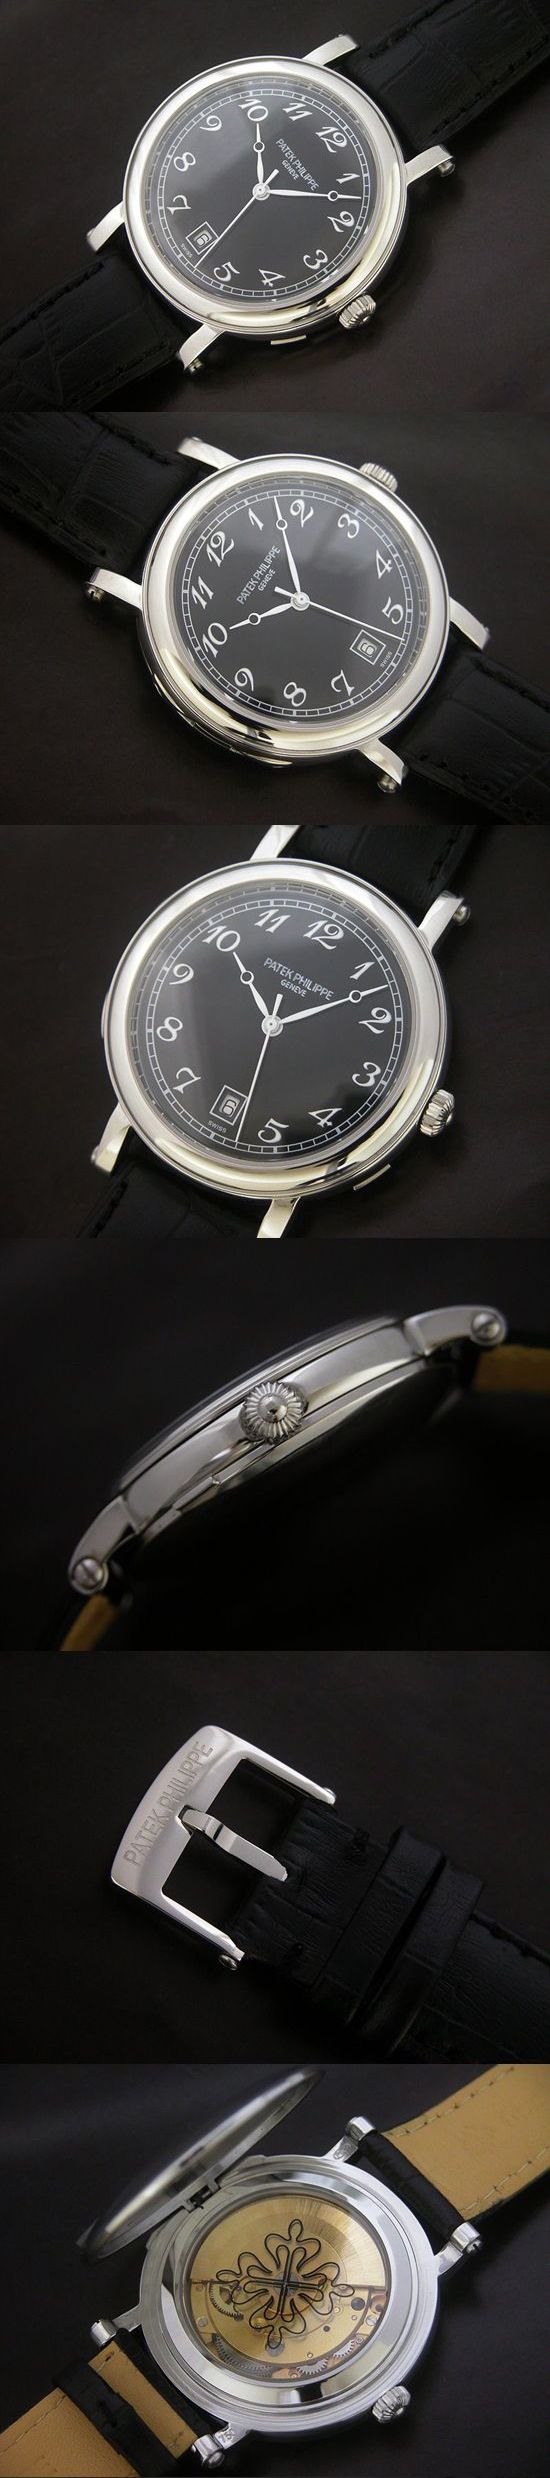 おしゃれなブランド時計がパテックフィリップ-カラトラバ-PATEK PHILIPPE-4860-ai-男性用を提供します.